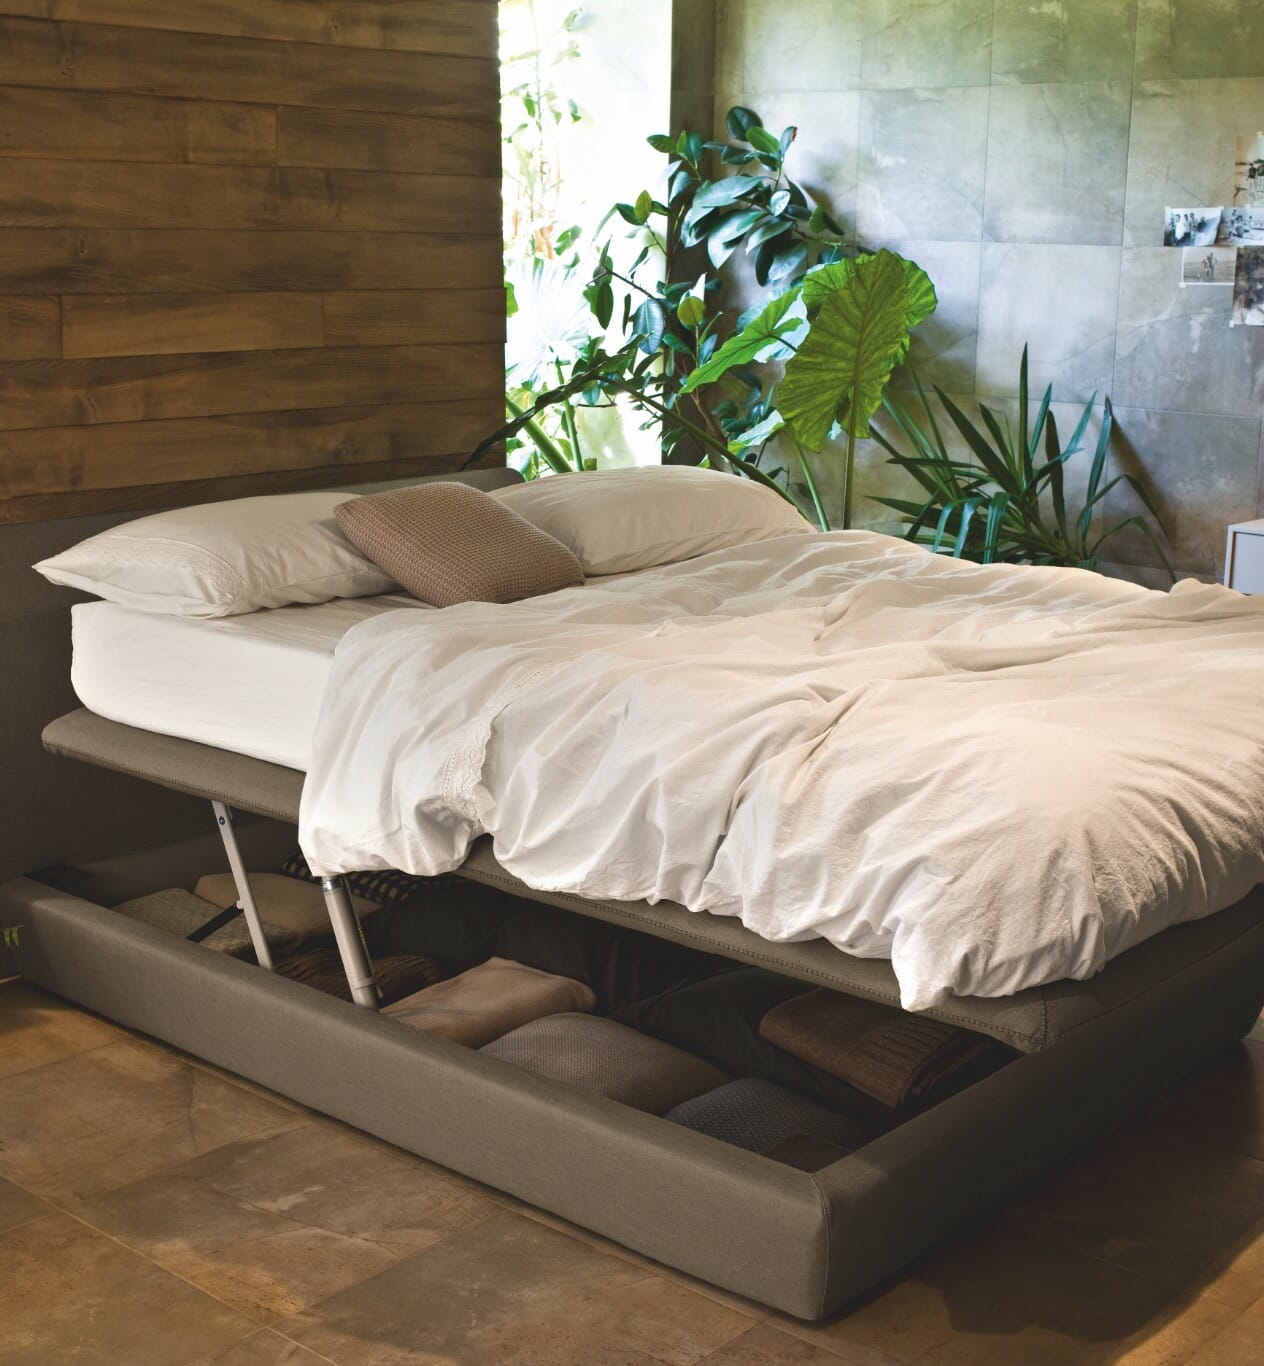 Bed Sets